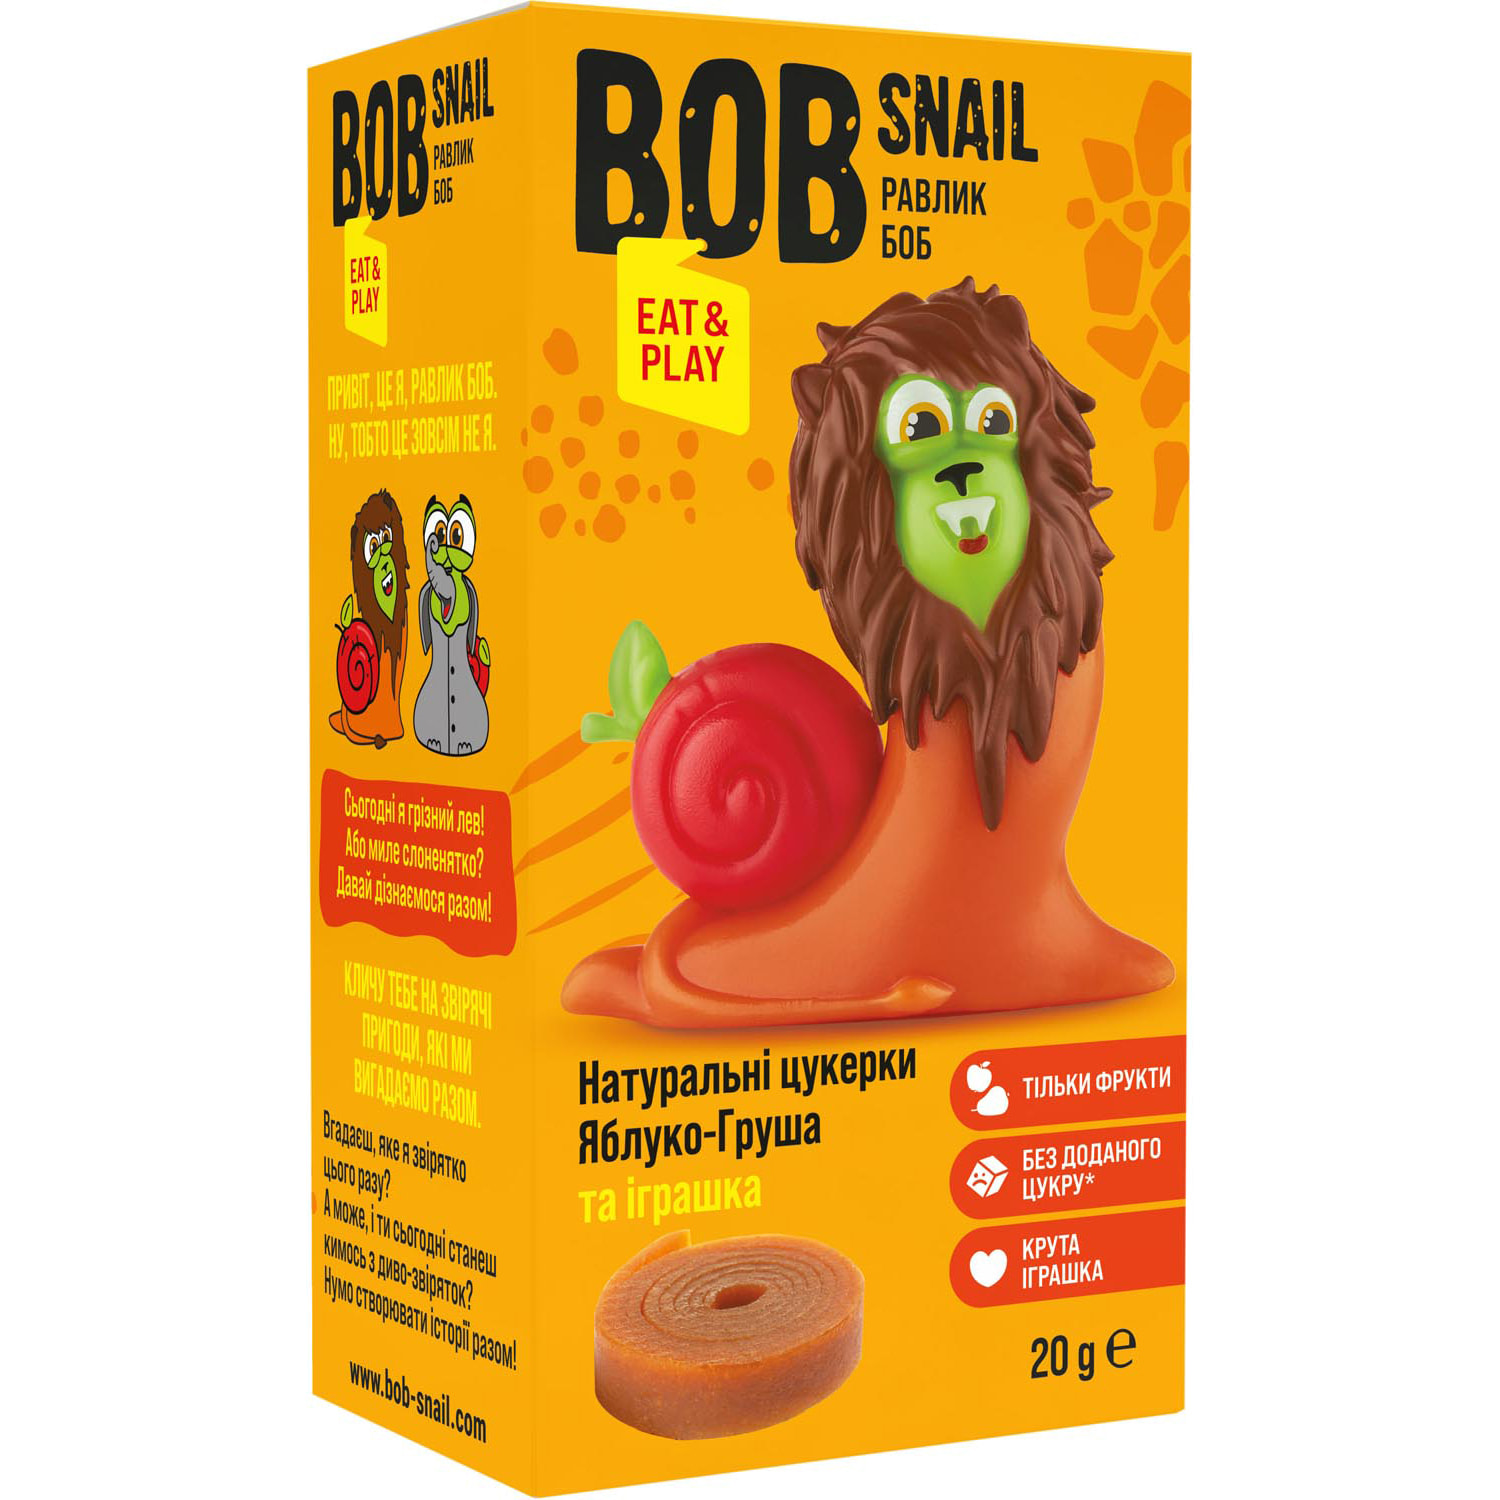 Натуральные конфеты Bob Snail Яблоко-Груша с игрушкой 160 г в ассортименте (8 шт. по 20 г) - фото 4